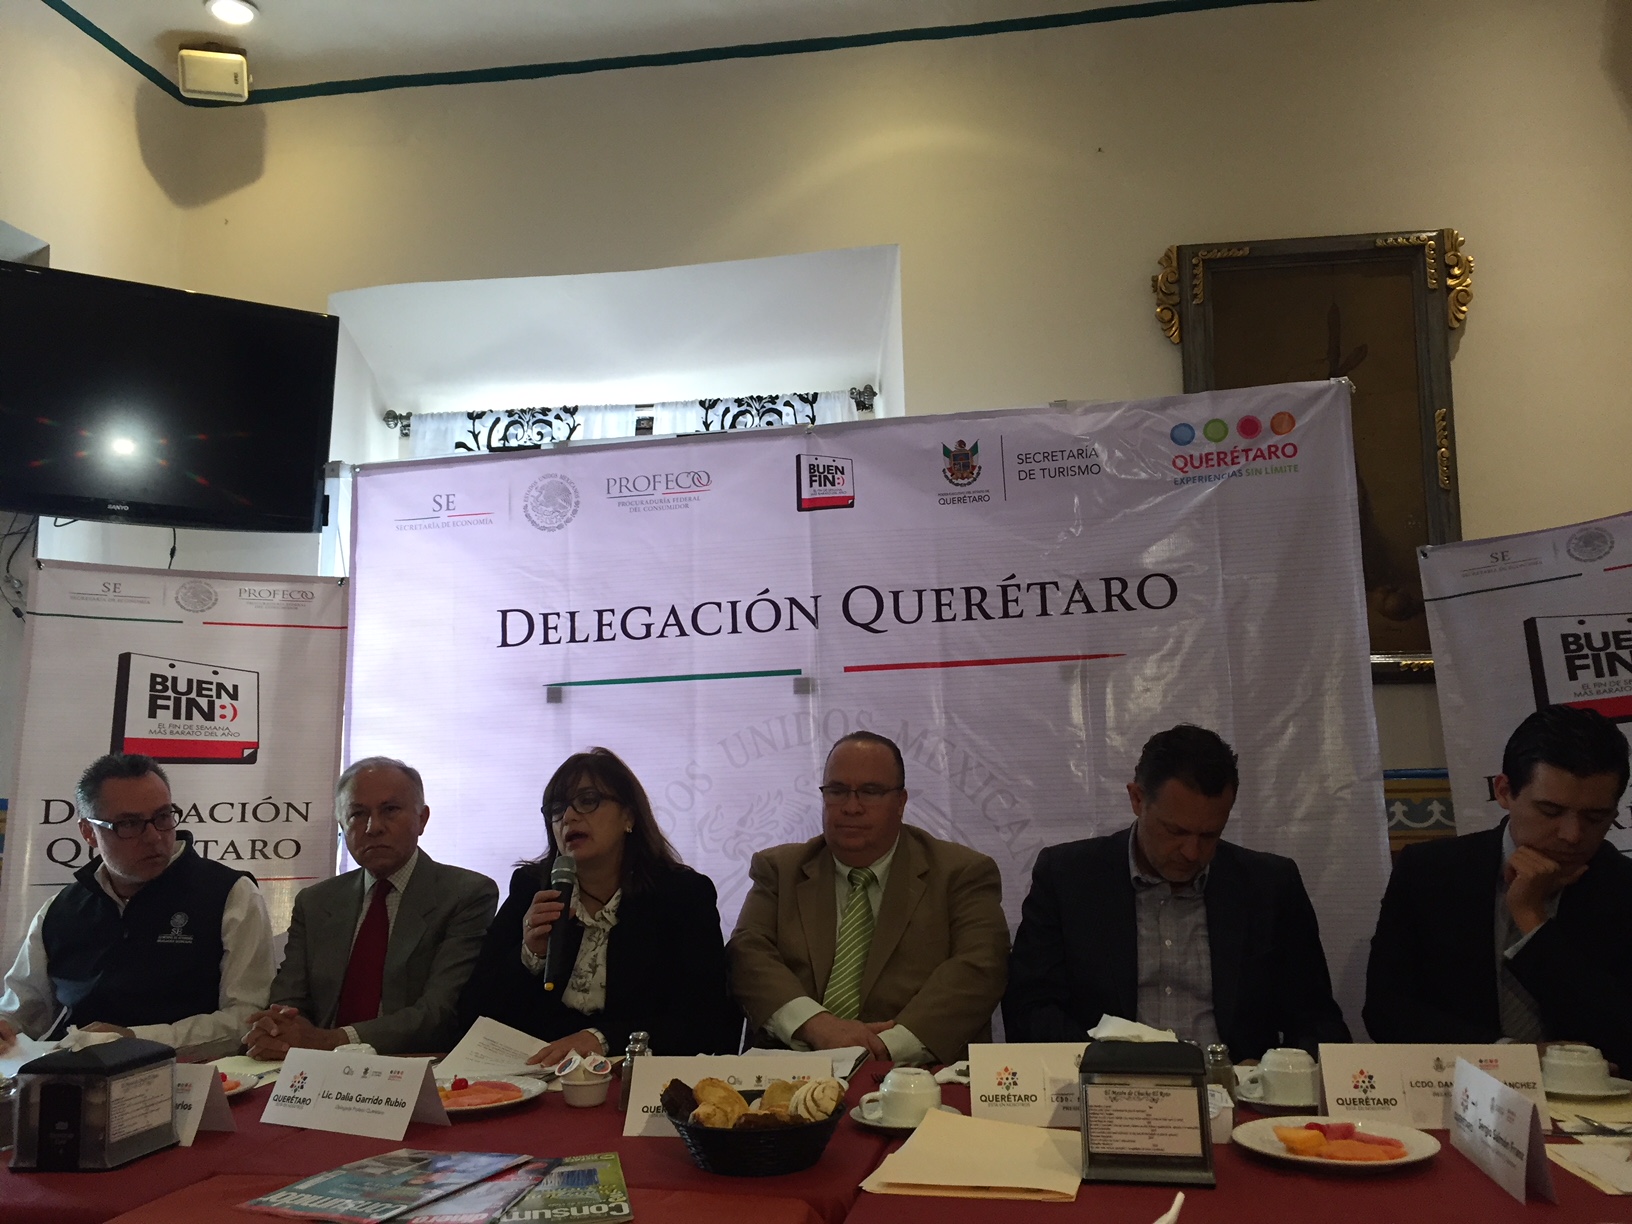  Más de 50 mil empresas se sumarán al “Buen Fin” en Querétaro